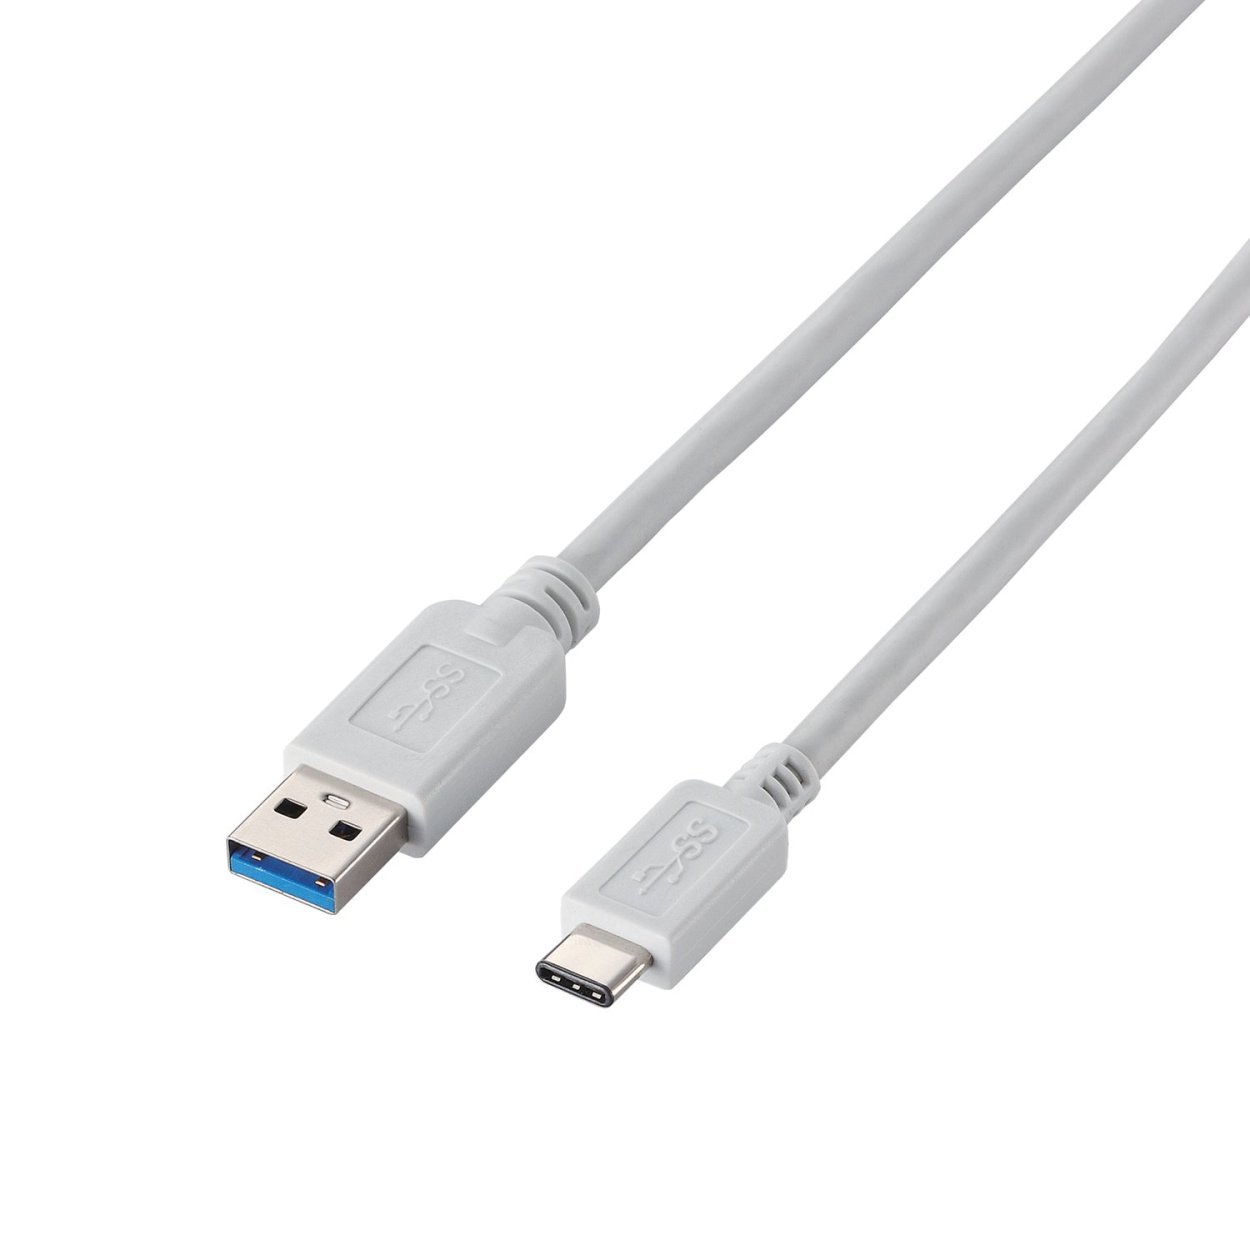 エレコム USBケーブル Type C ( USB A to USB C ) 15W 1m USB3.1 ホワイト USB3-APAC10WH